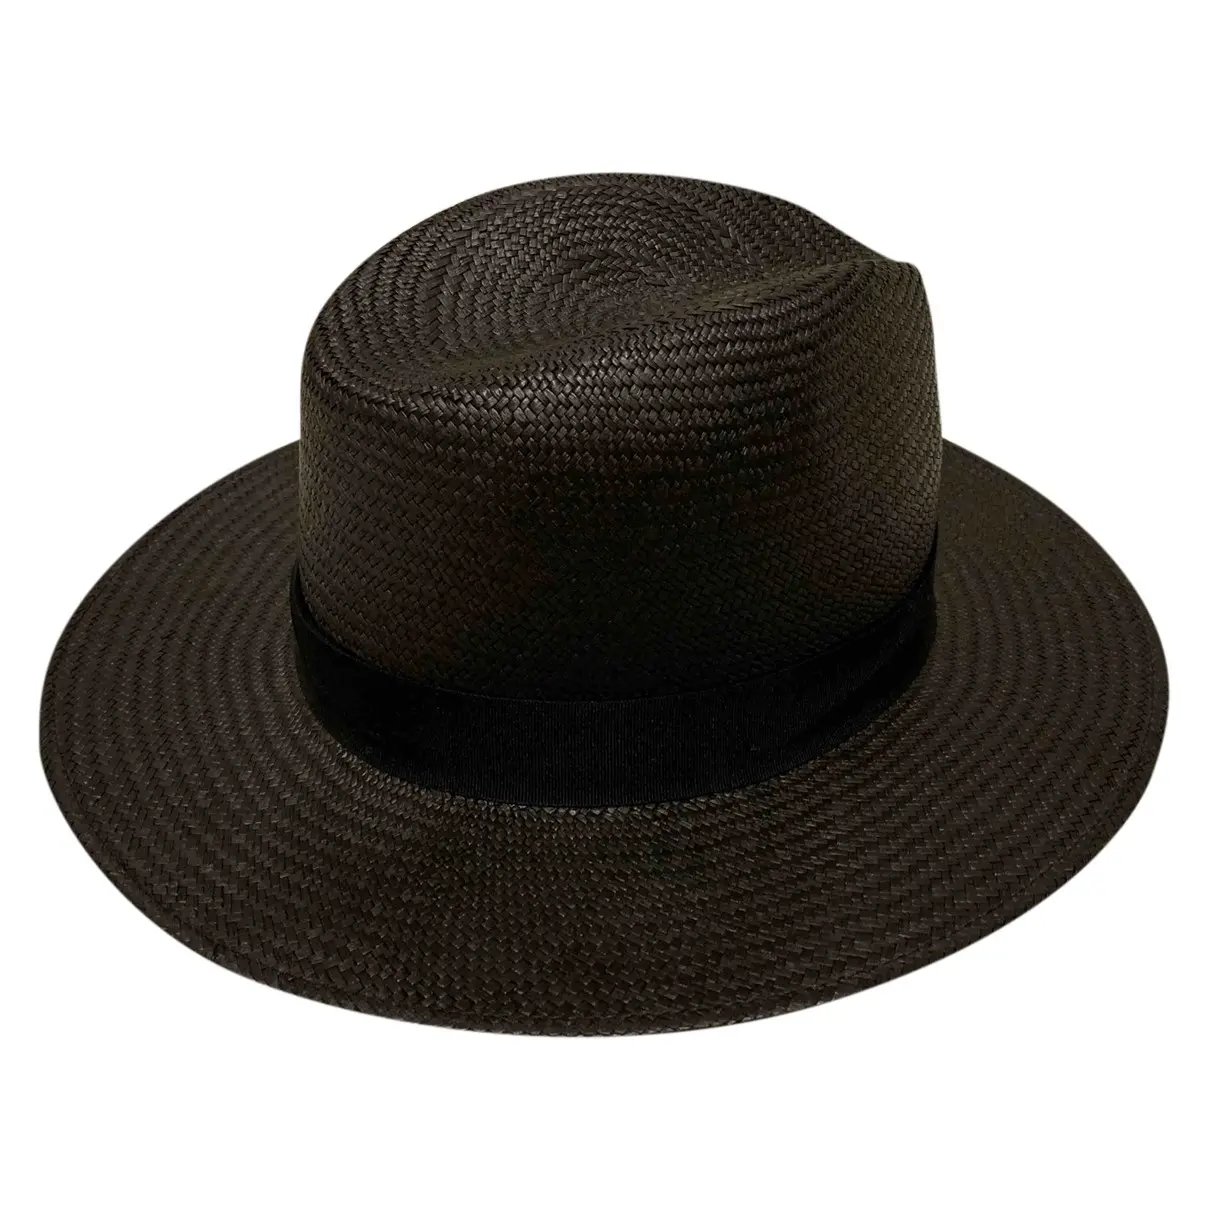 Black Wicker Hat Rag & Bone